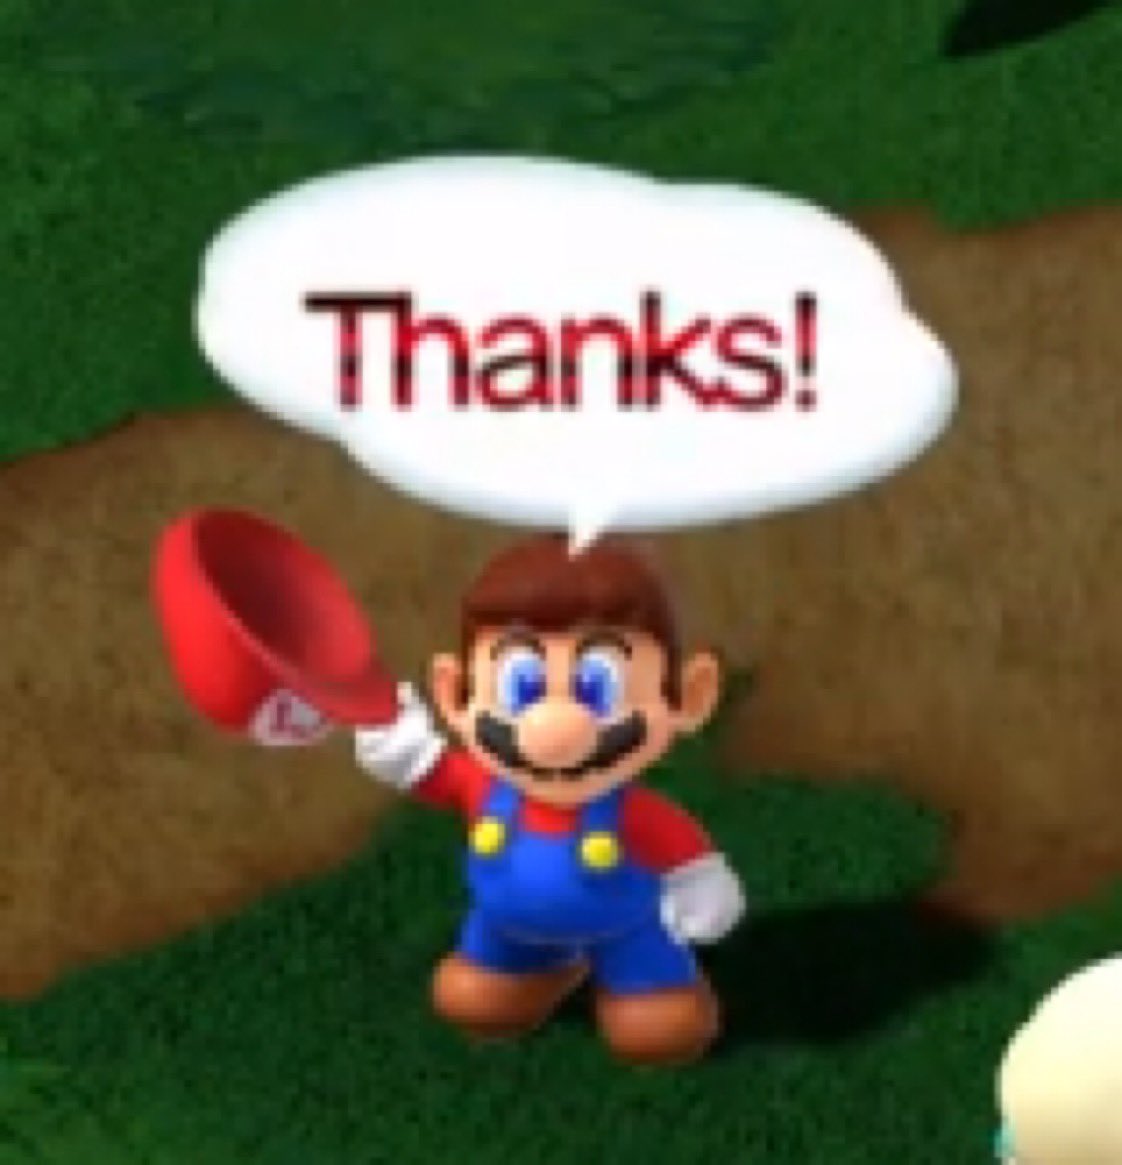 Thanks! - Super Mario RPG